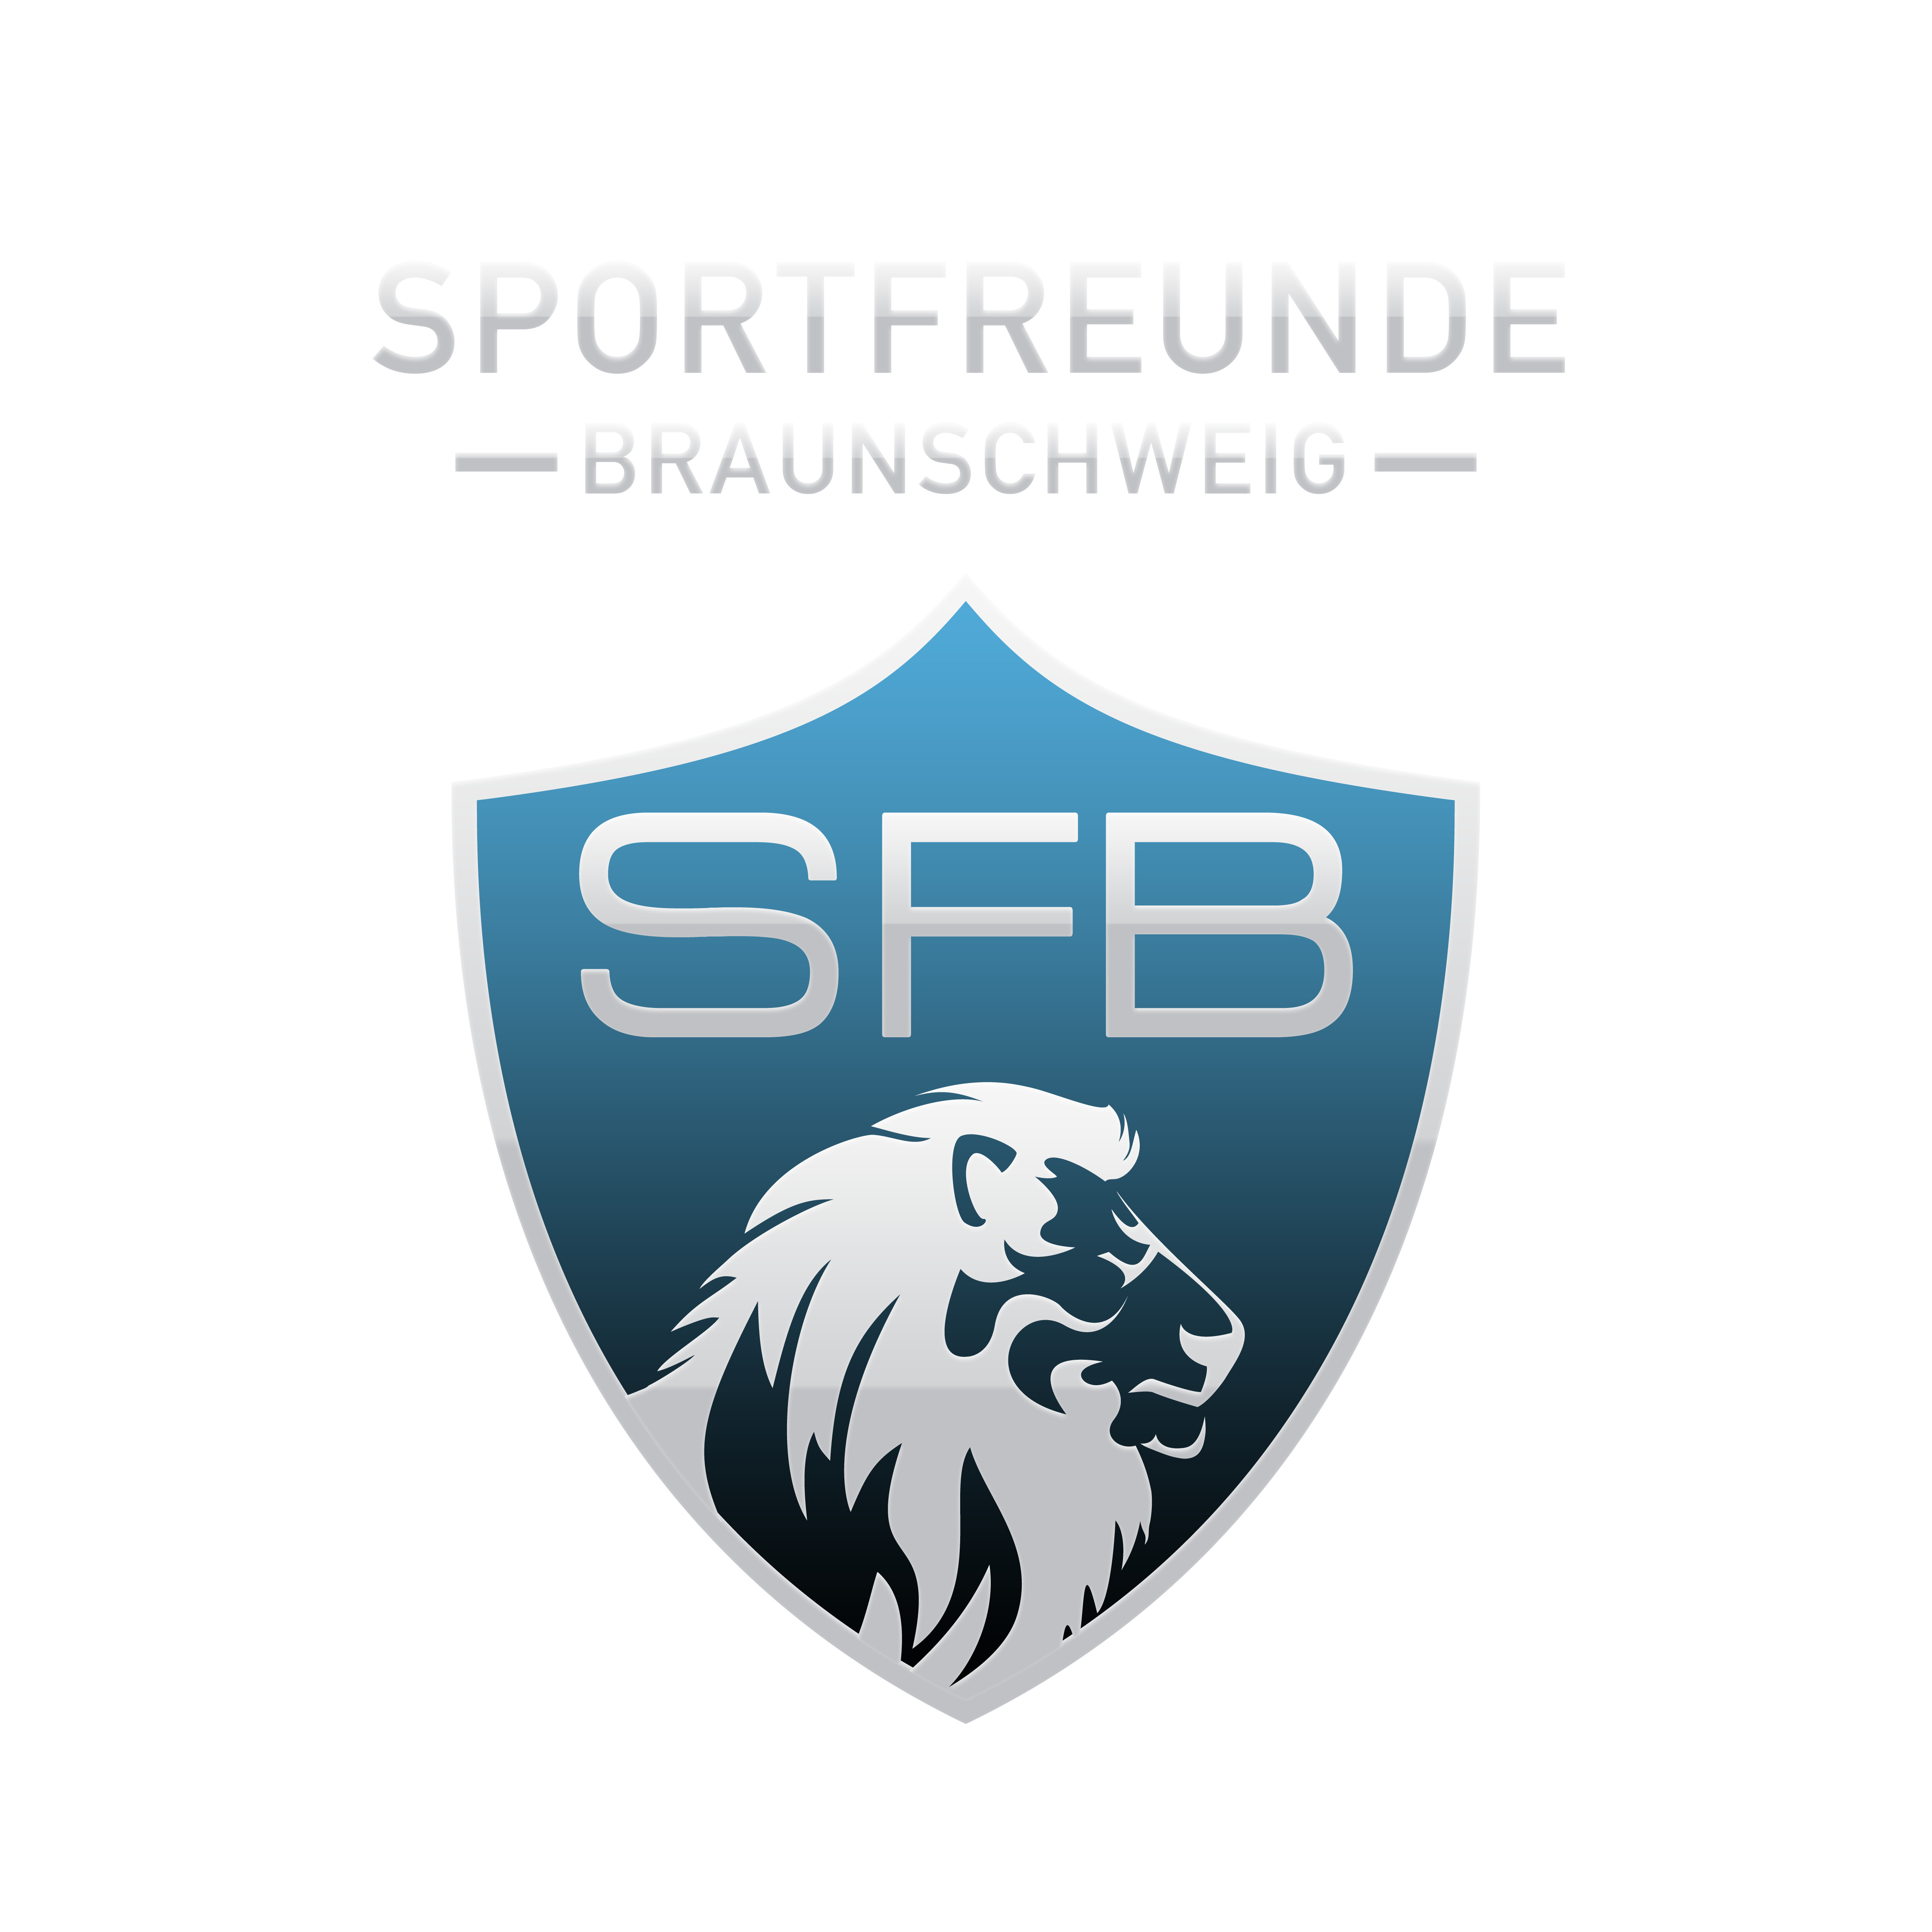 Sportfreunde Braunschweig